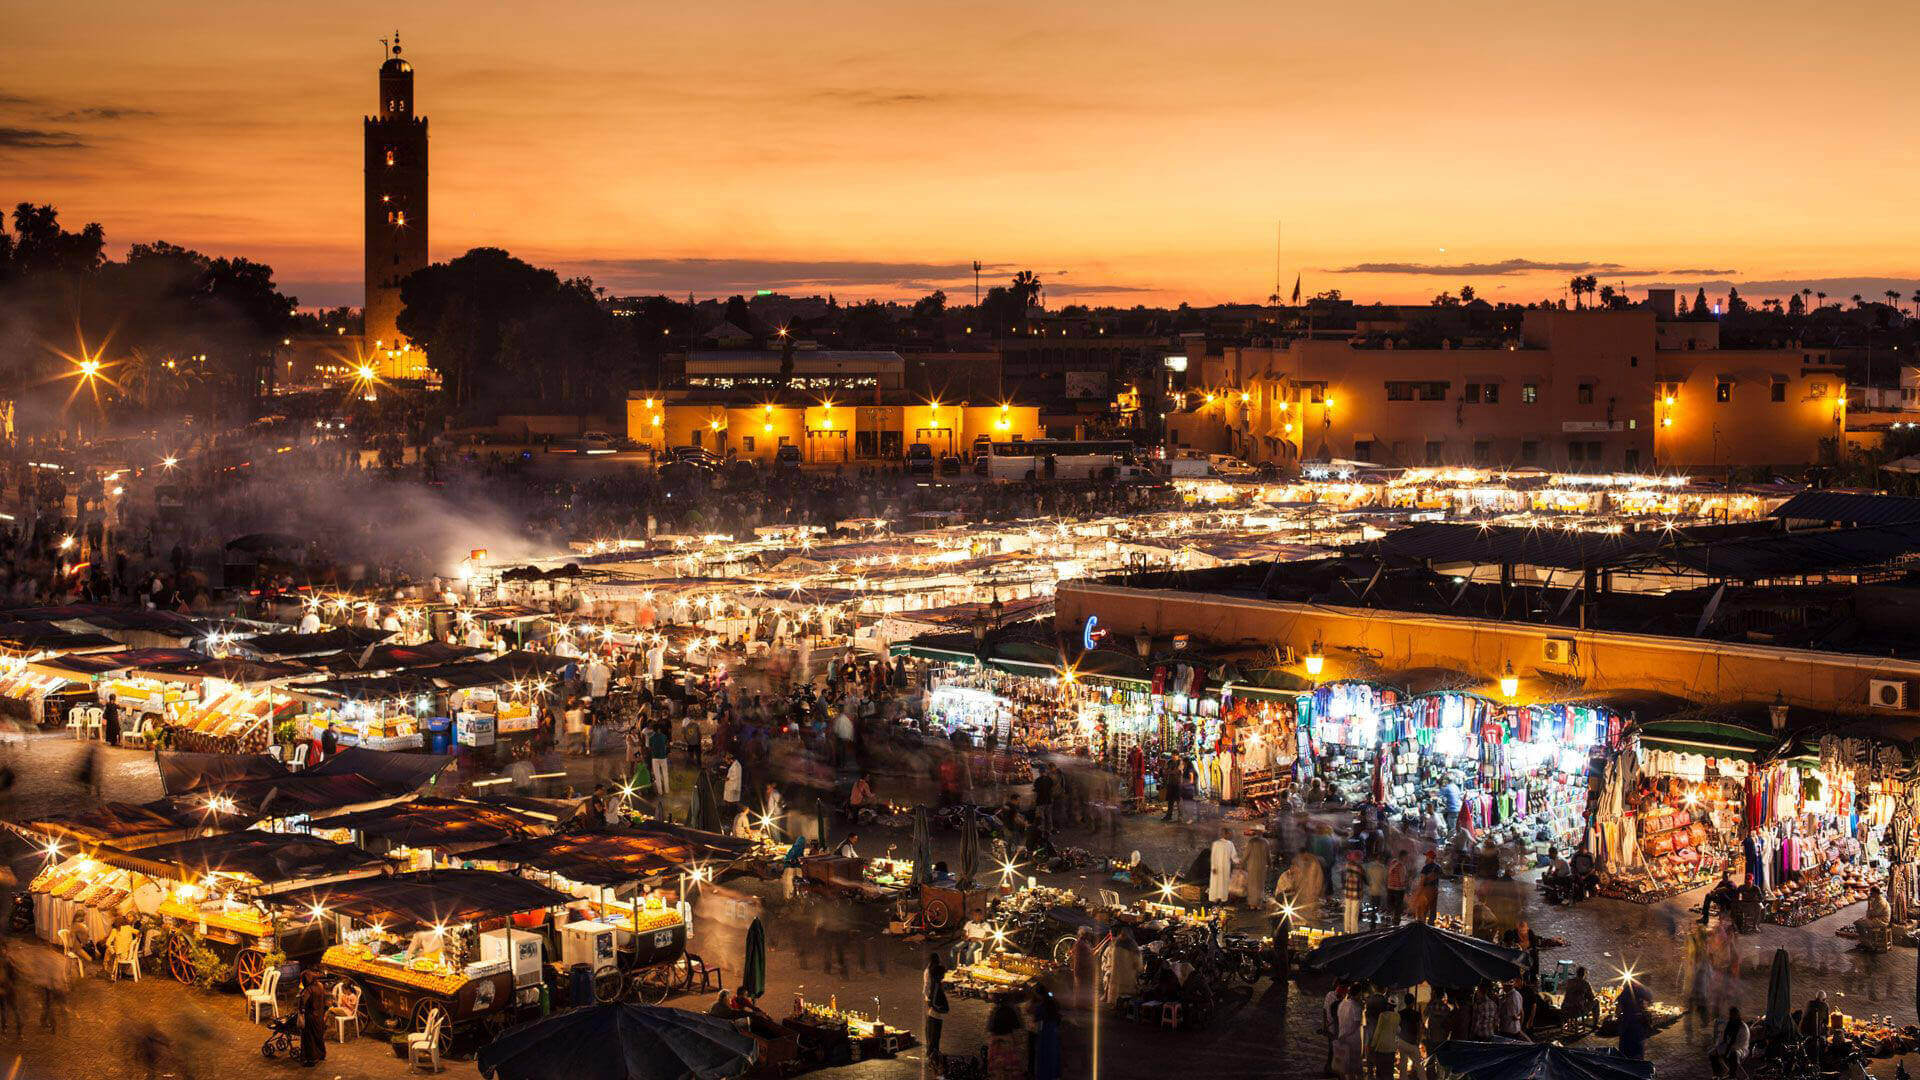 لمغاربة استهلكوا الكهرباء بشكل قياسي نهار الجمعة